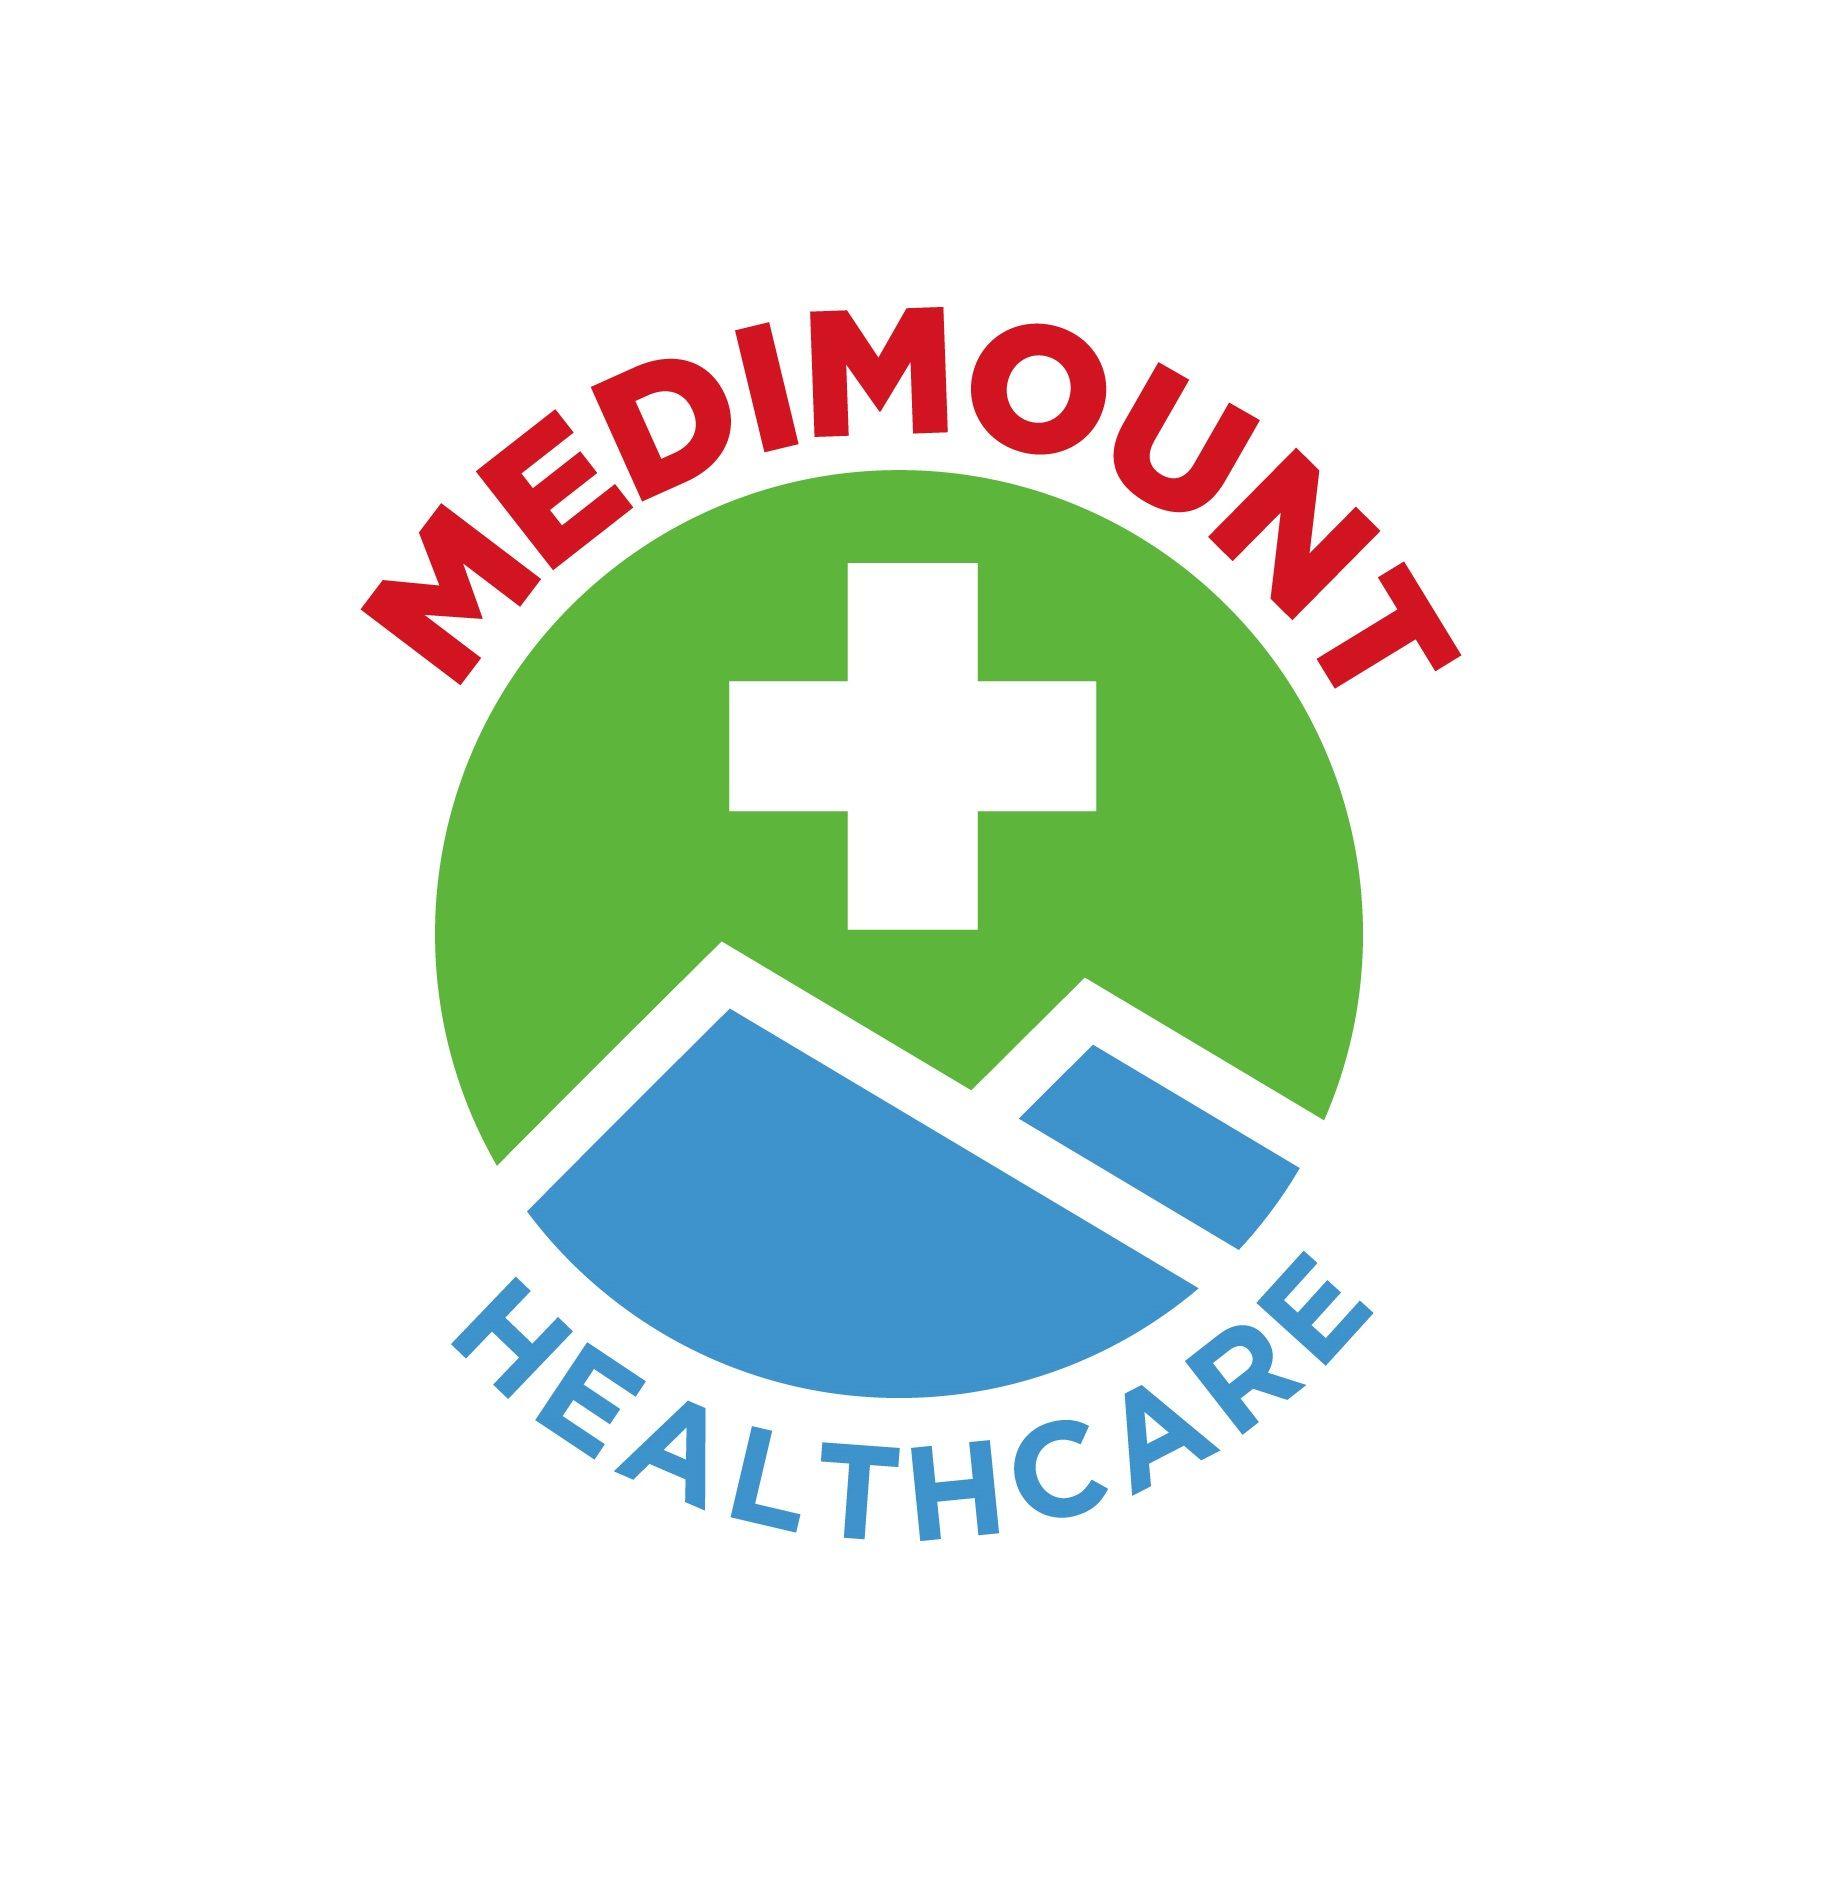 Medimount Healthcare